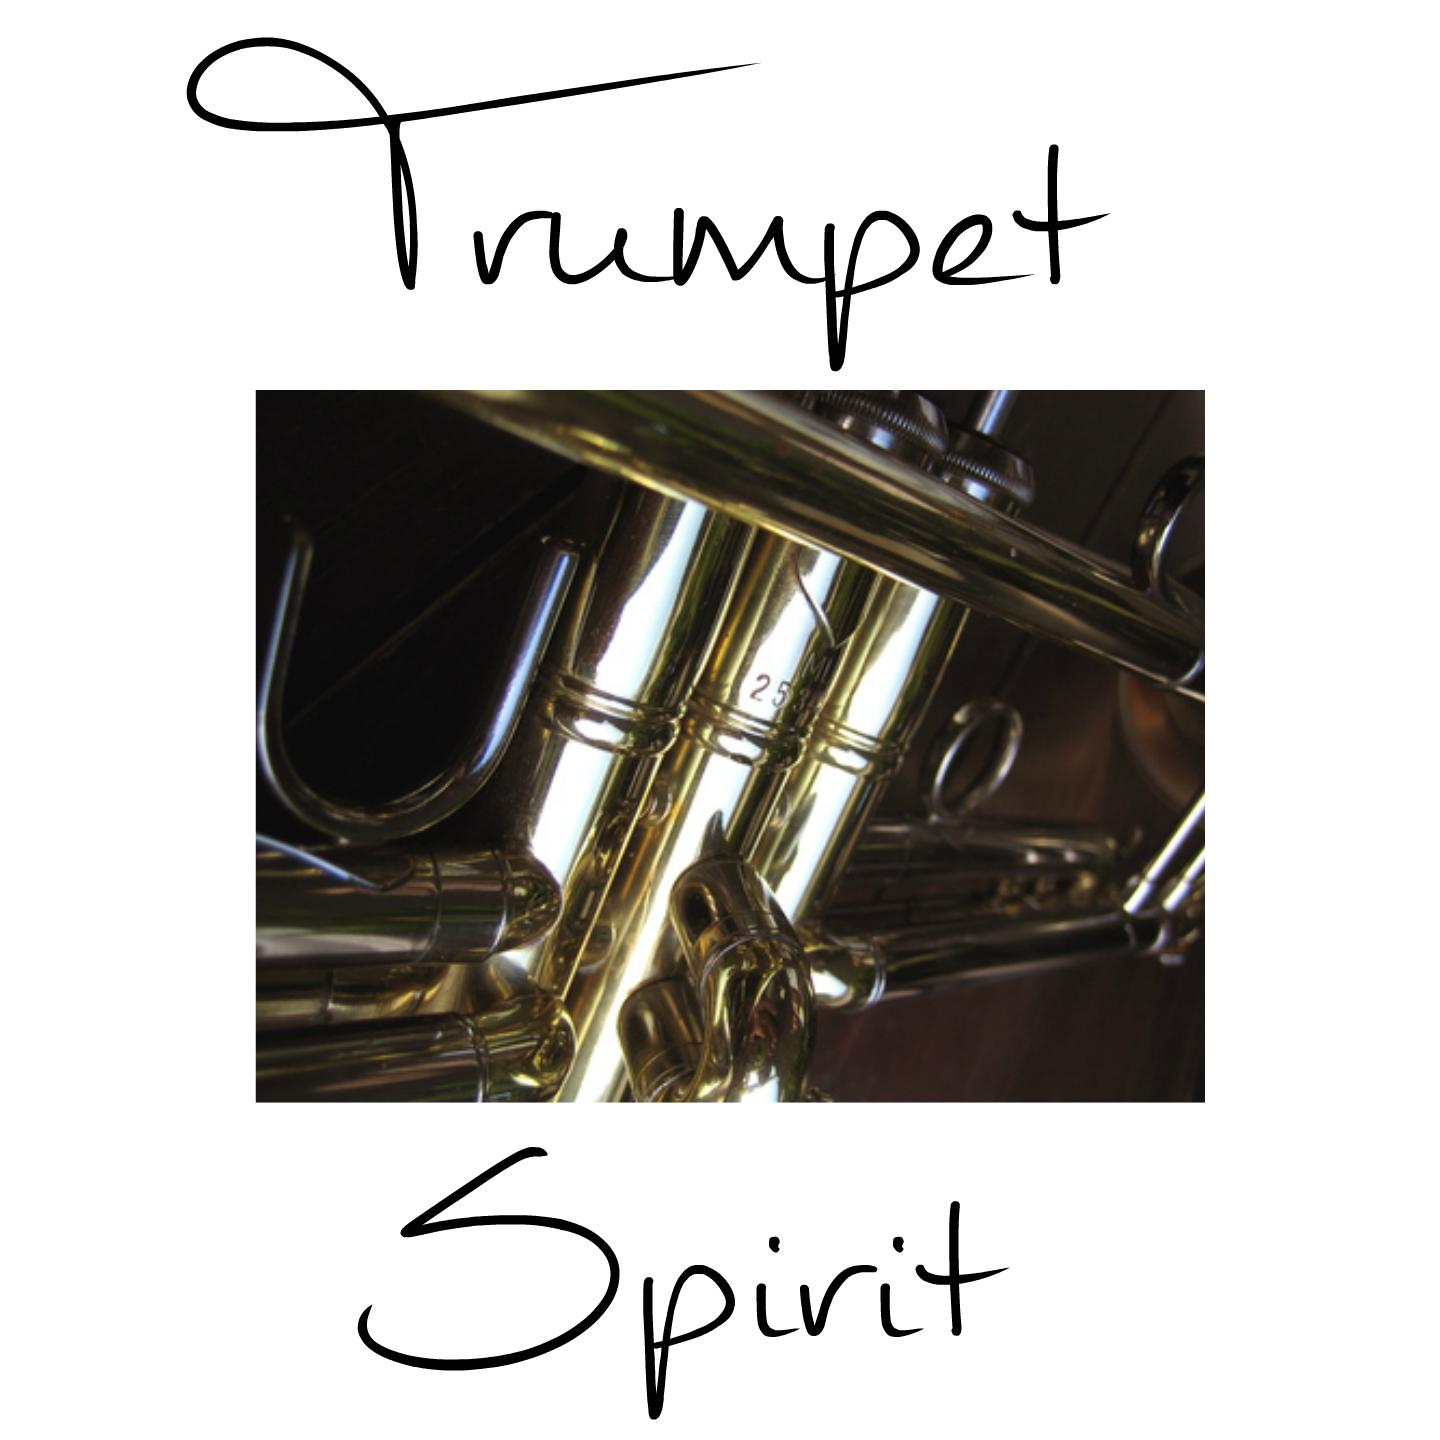 Trumpet Concerto in D Major: III. Grave